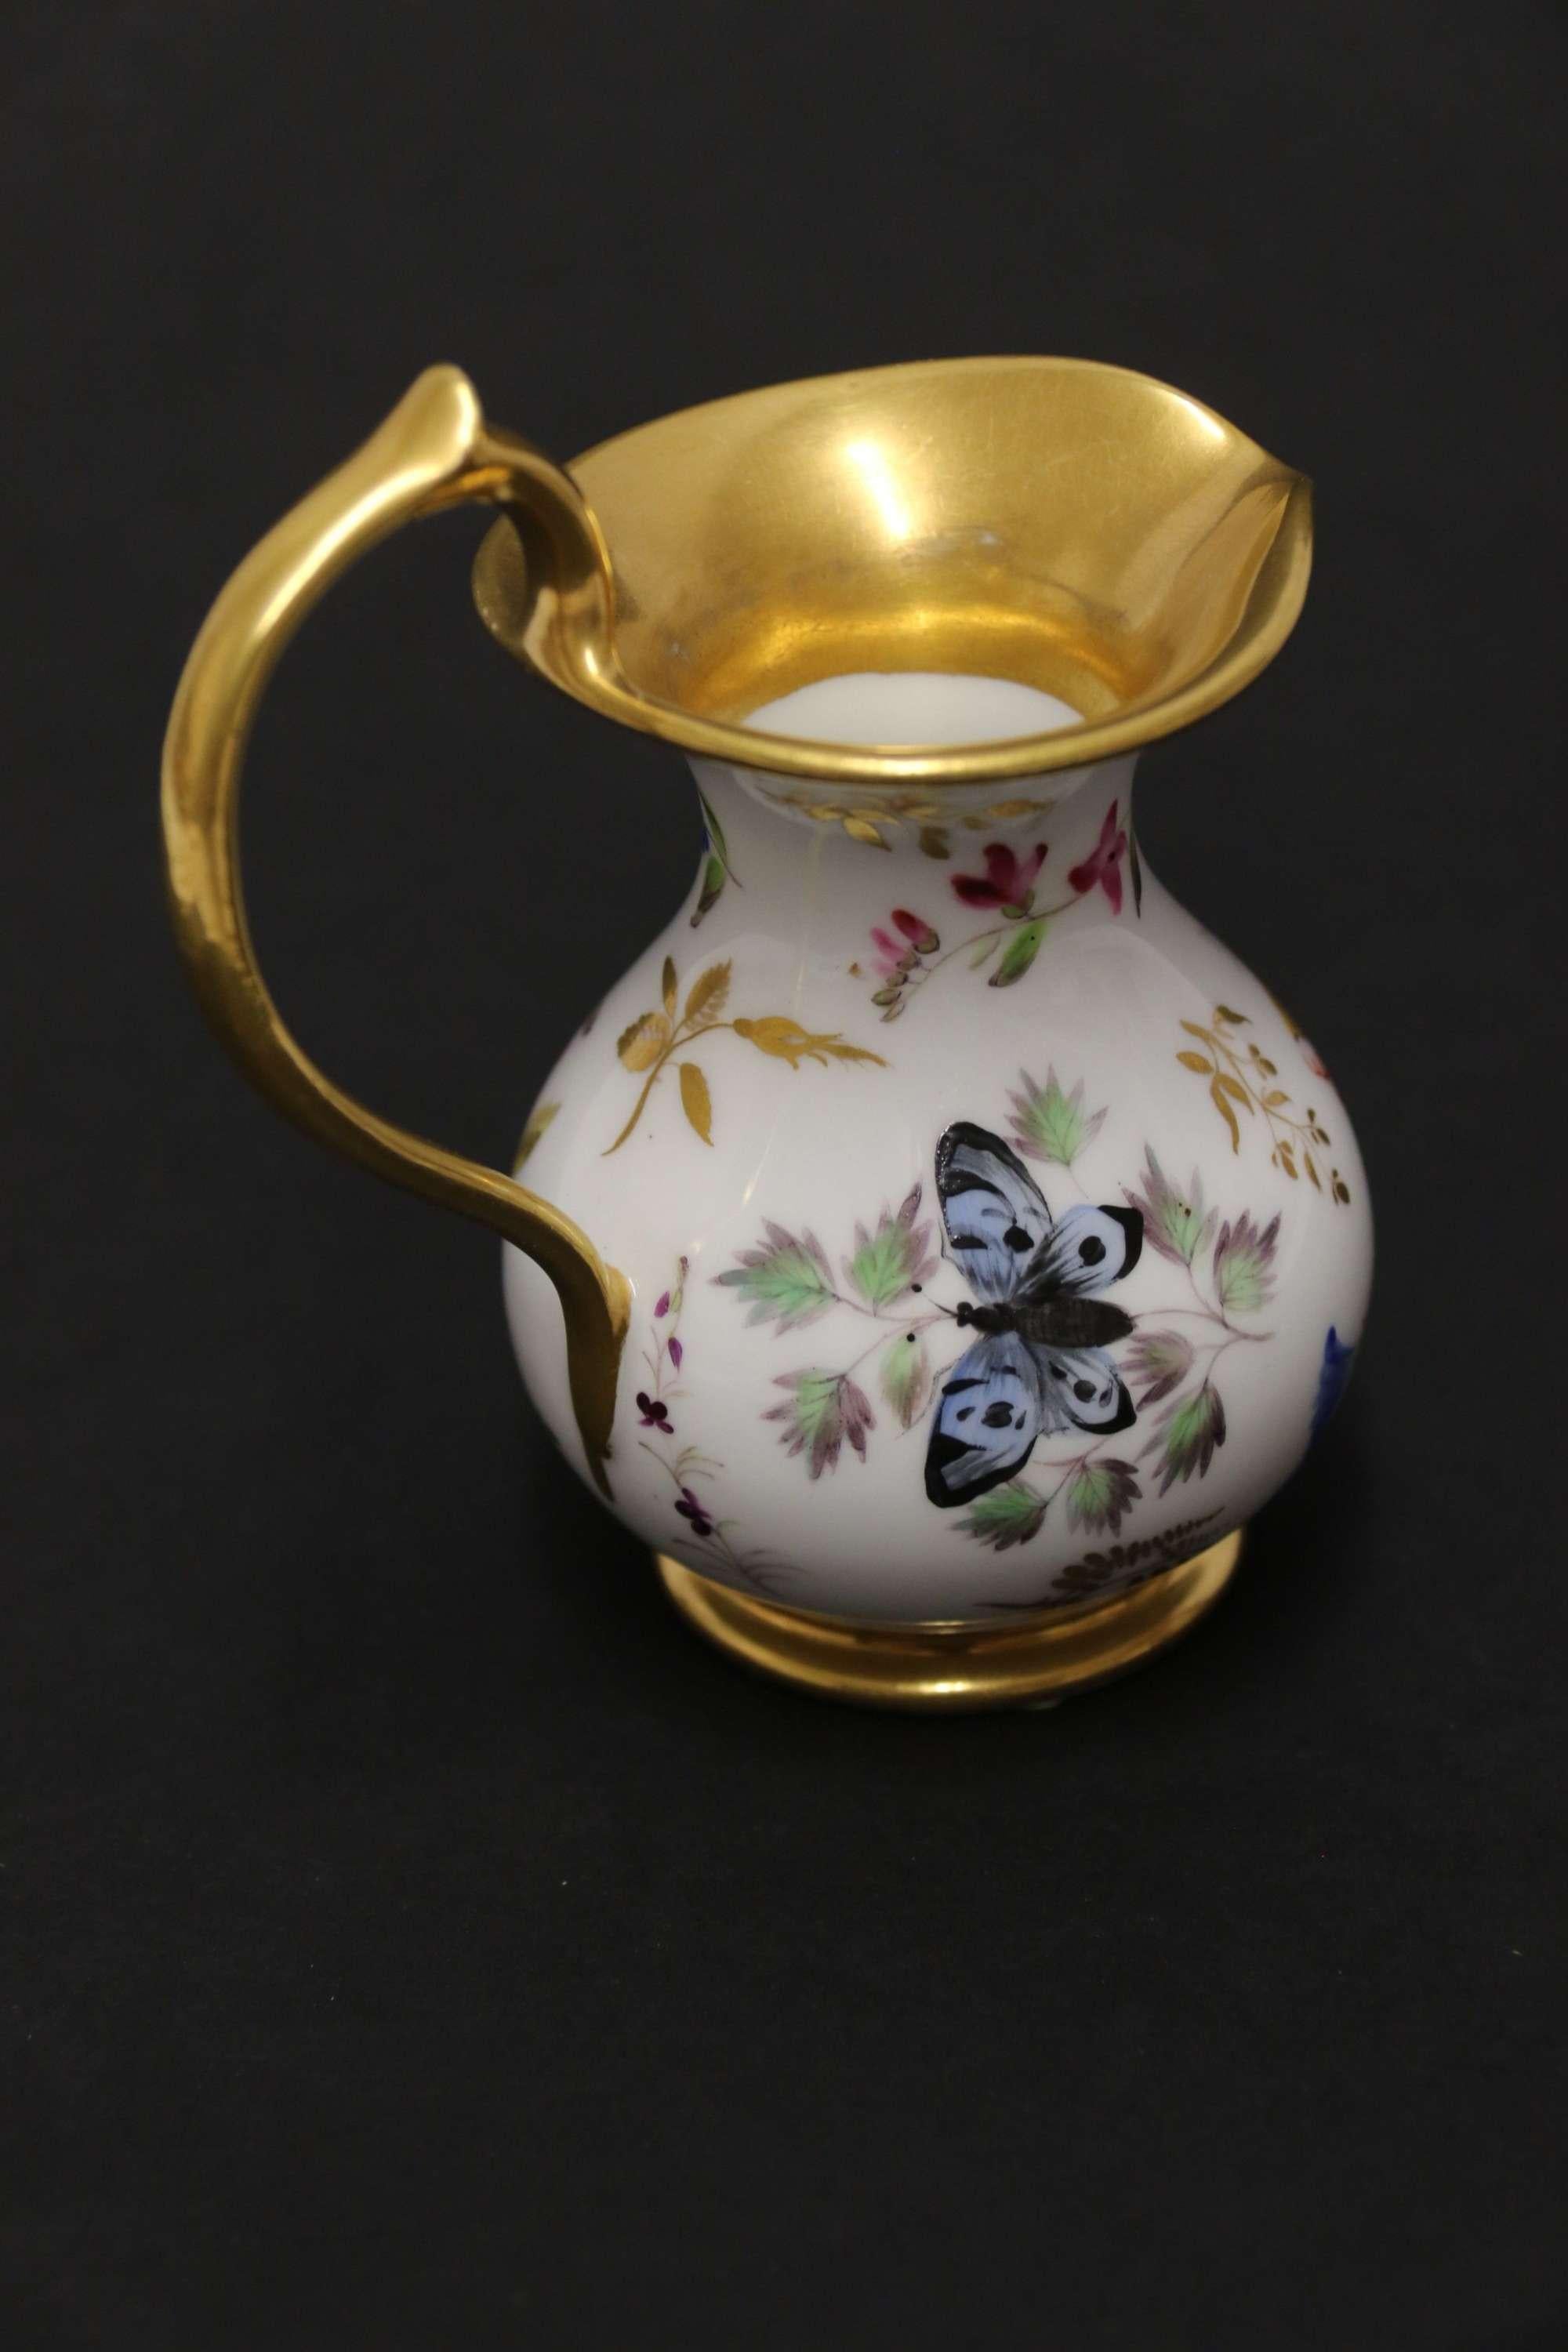 Aiguière miniature en porcelaine française de belle qualité du début du 19e siècle

Magnifique petite aiguière en porcelaine française, vers 1830, peinte à la main d'un assortiment de fleurs, d'un coquillage, d'un scarabée et d'un papillon. Le bord,